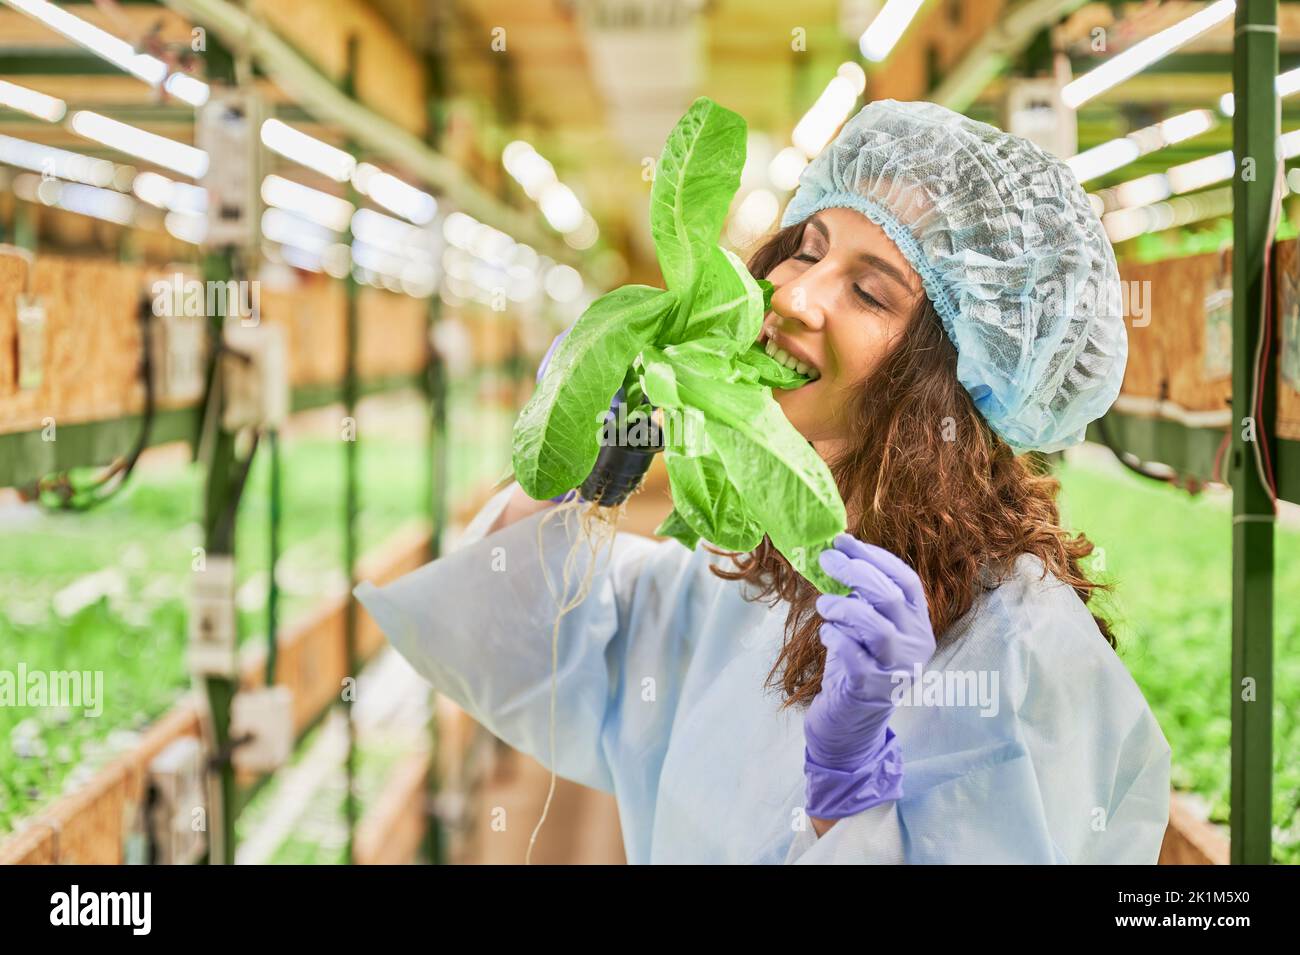 Weibliche Gärtnerin in Einwegkappe hält Topf mit grünen Blattpflanze und beißt köstliche Blatt. Frau in Gartenhandschuhen, die frisches Blattgemüse im Gewächshaus isst. Stockfoto